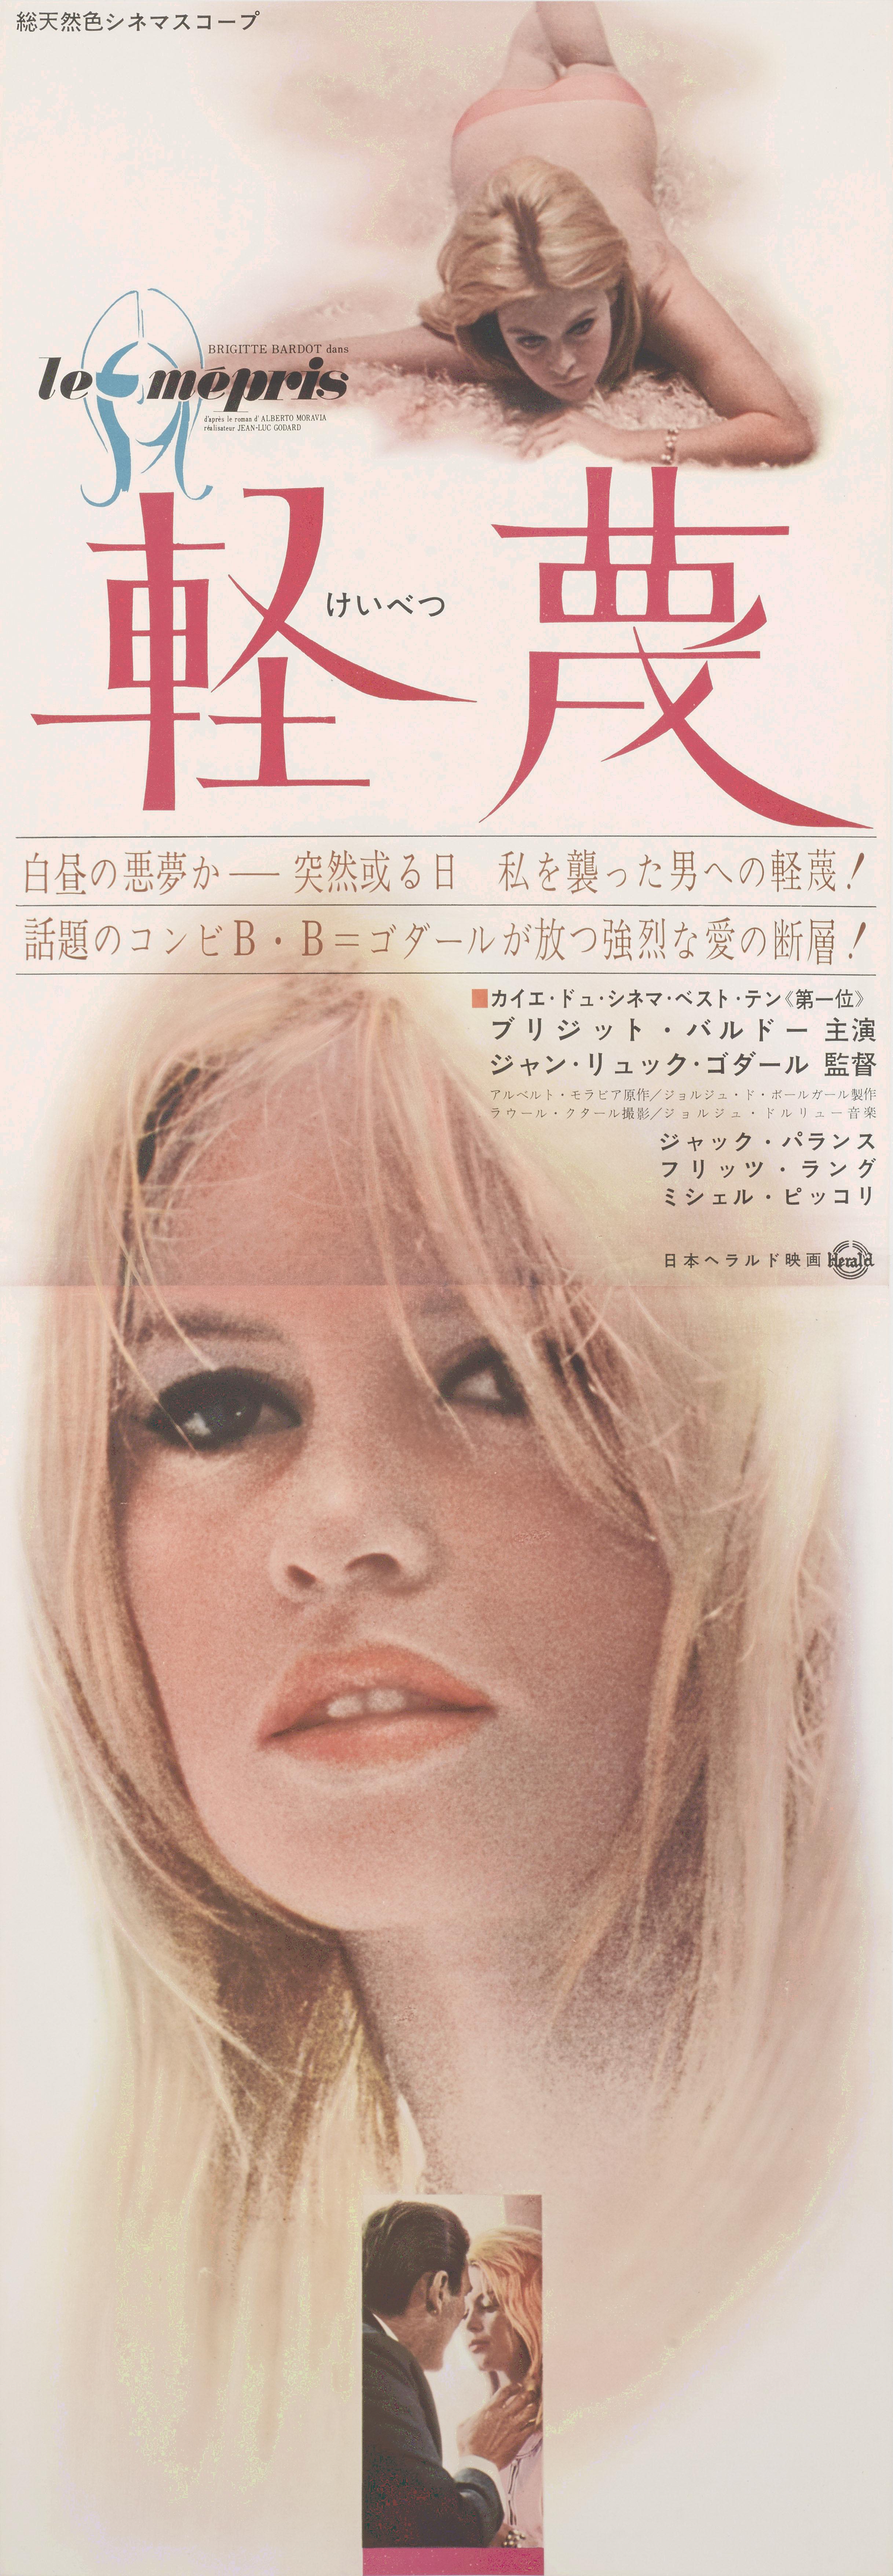 Original japanisches Original-Filmplakat für den französischen New Wave-Film von 1963 von Jean-Luc Godard und mit Brigitte Bardot in der Hauptrolle. Das Kunstwerk ist ein Unikat der japanischen Erstveröffentlichung des Films im Jahr 1964. Dieses